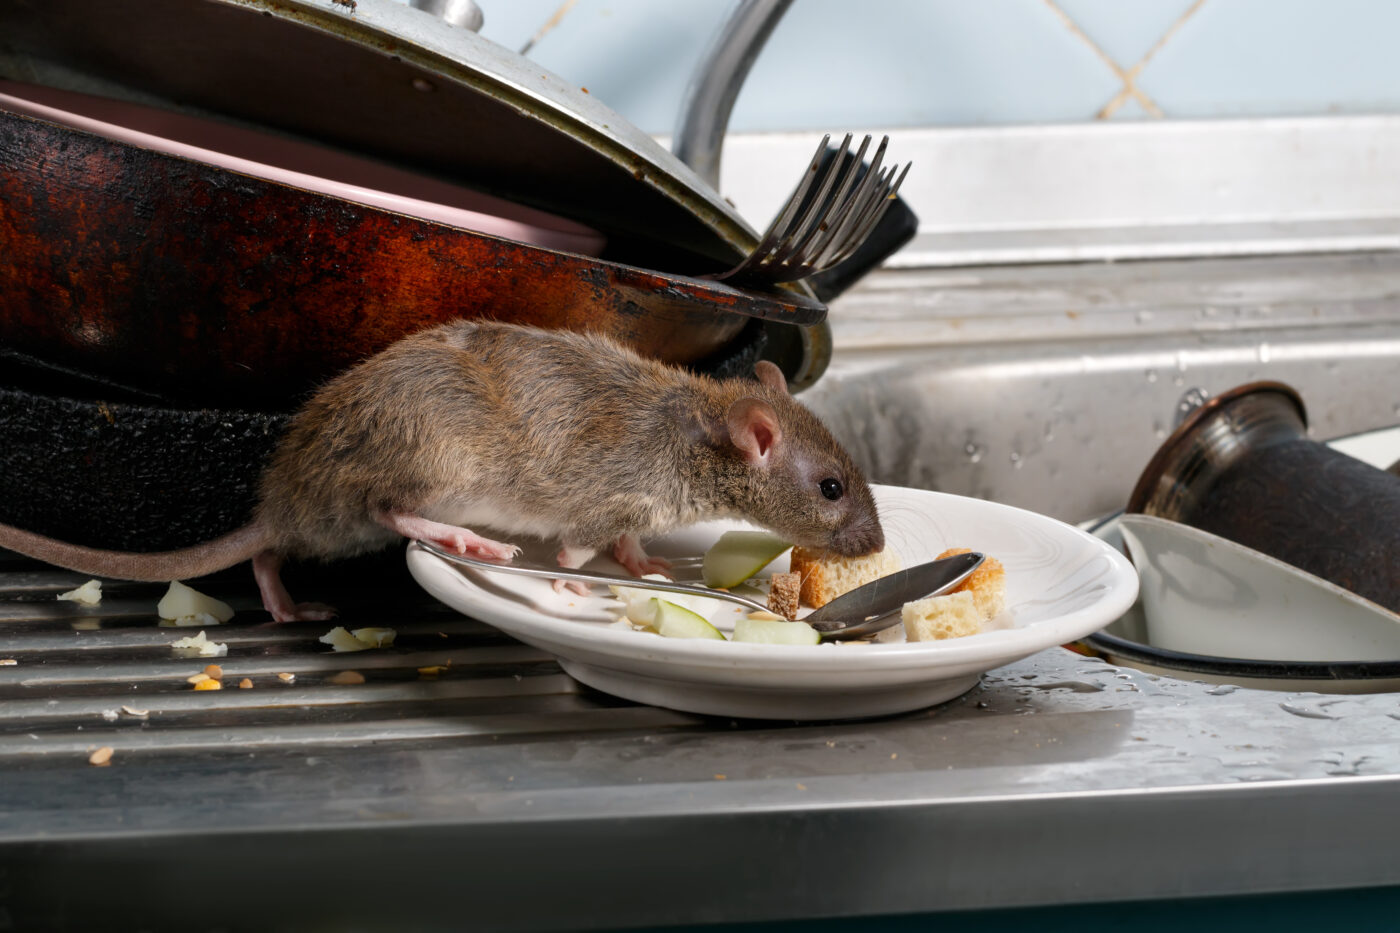 Rat feeding on a plat